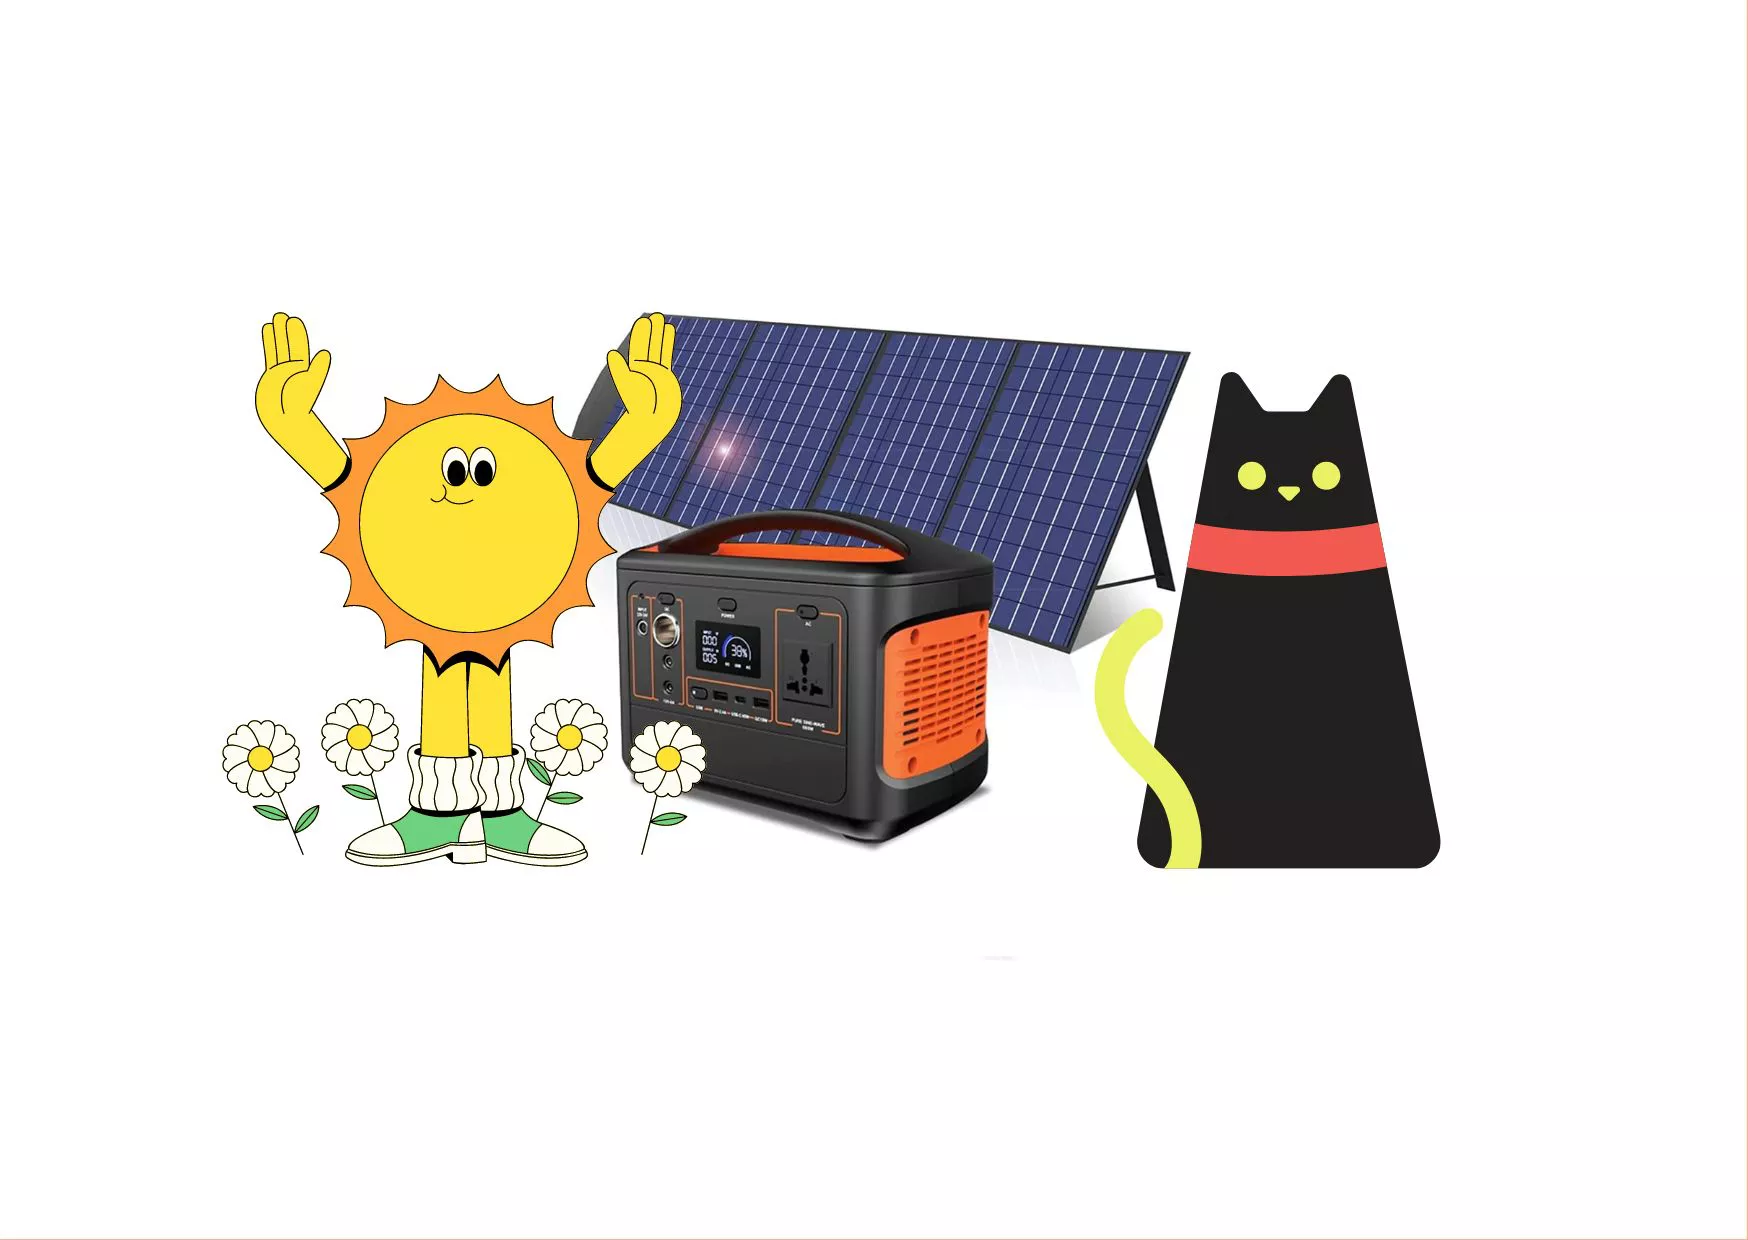 Centrale elettrica portatile con pannello solare da BALCONE: l